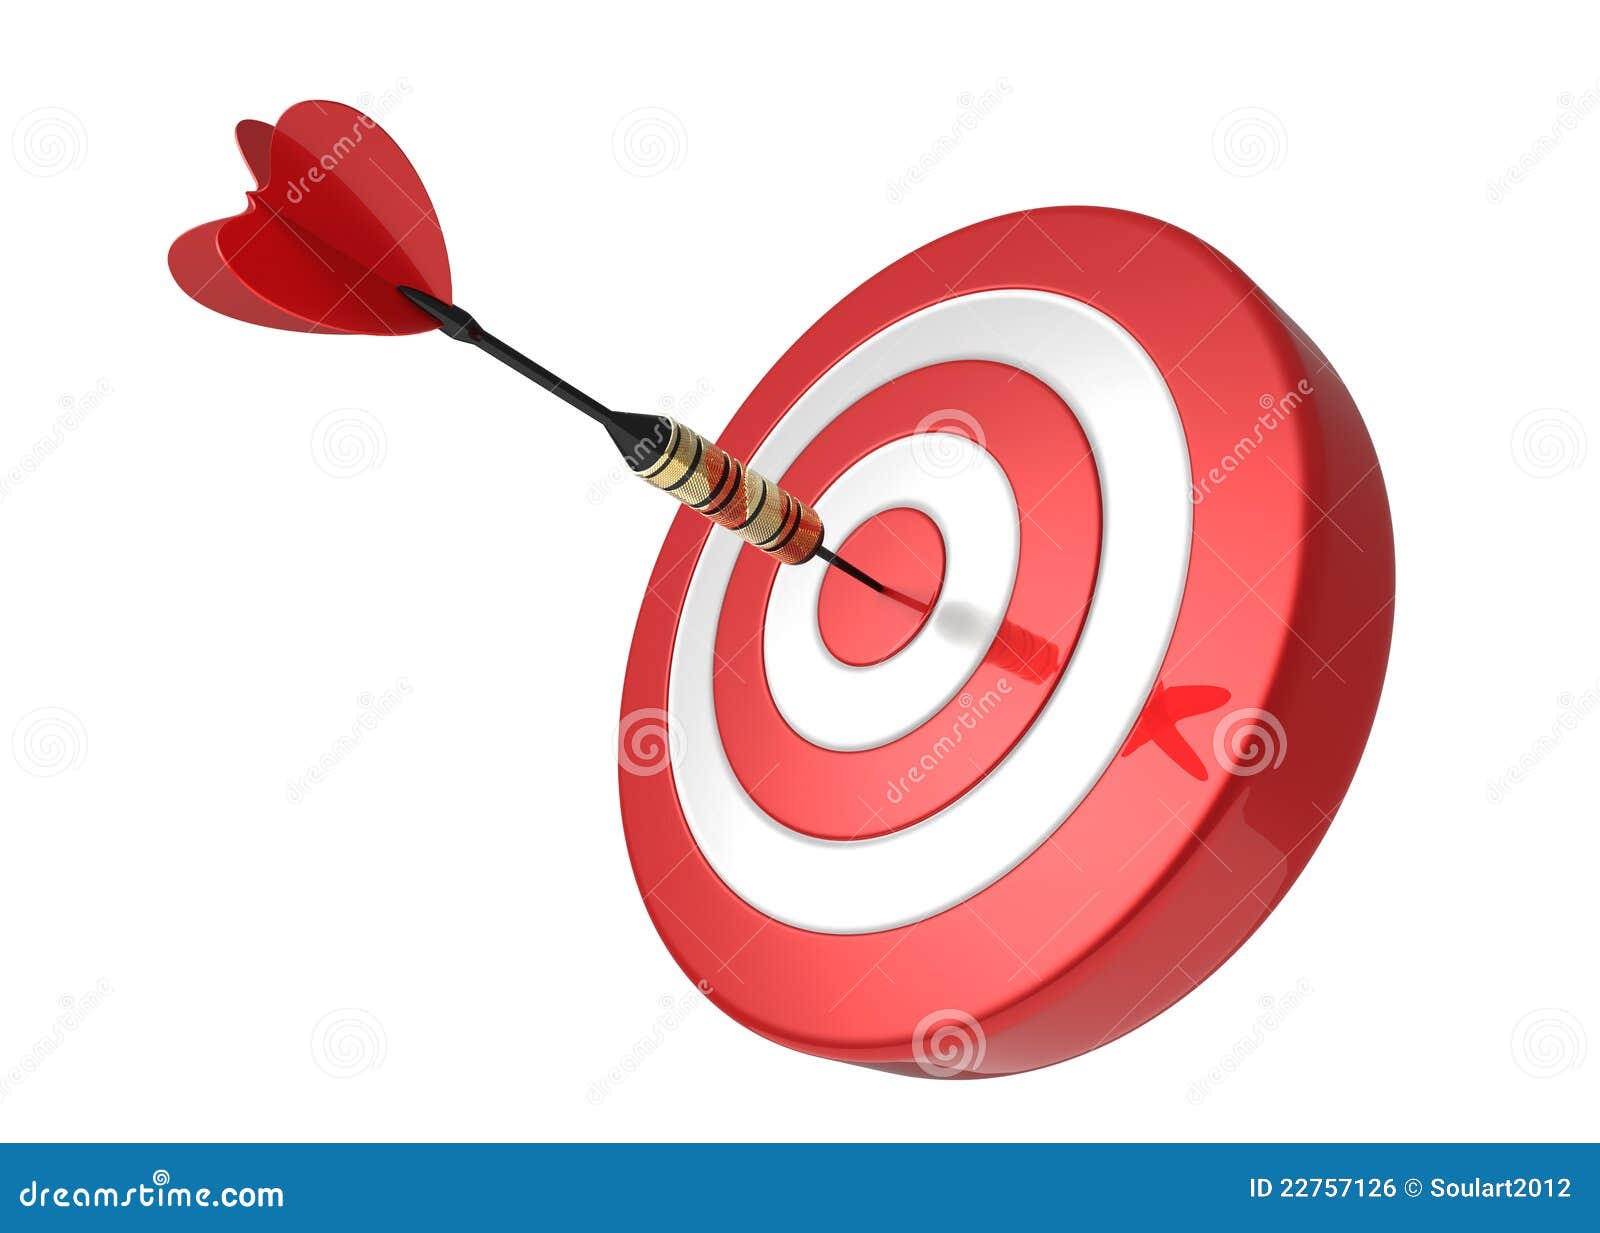 dart hitting the target